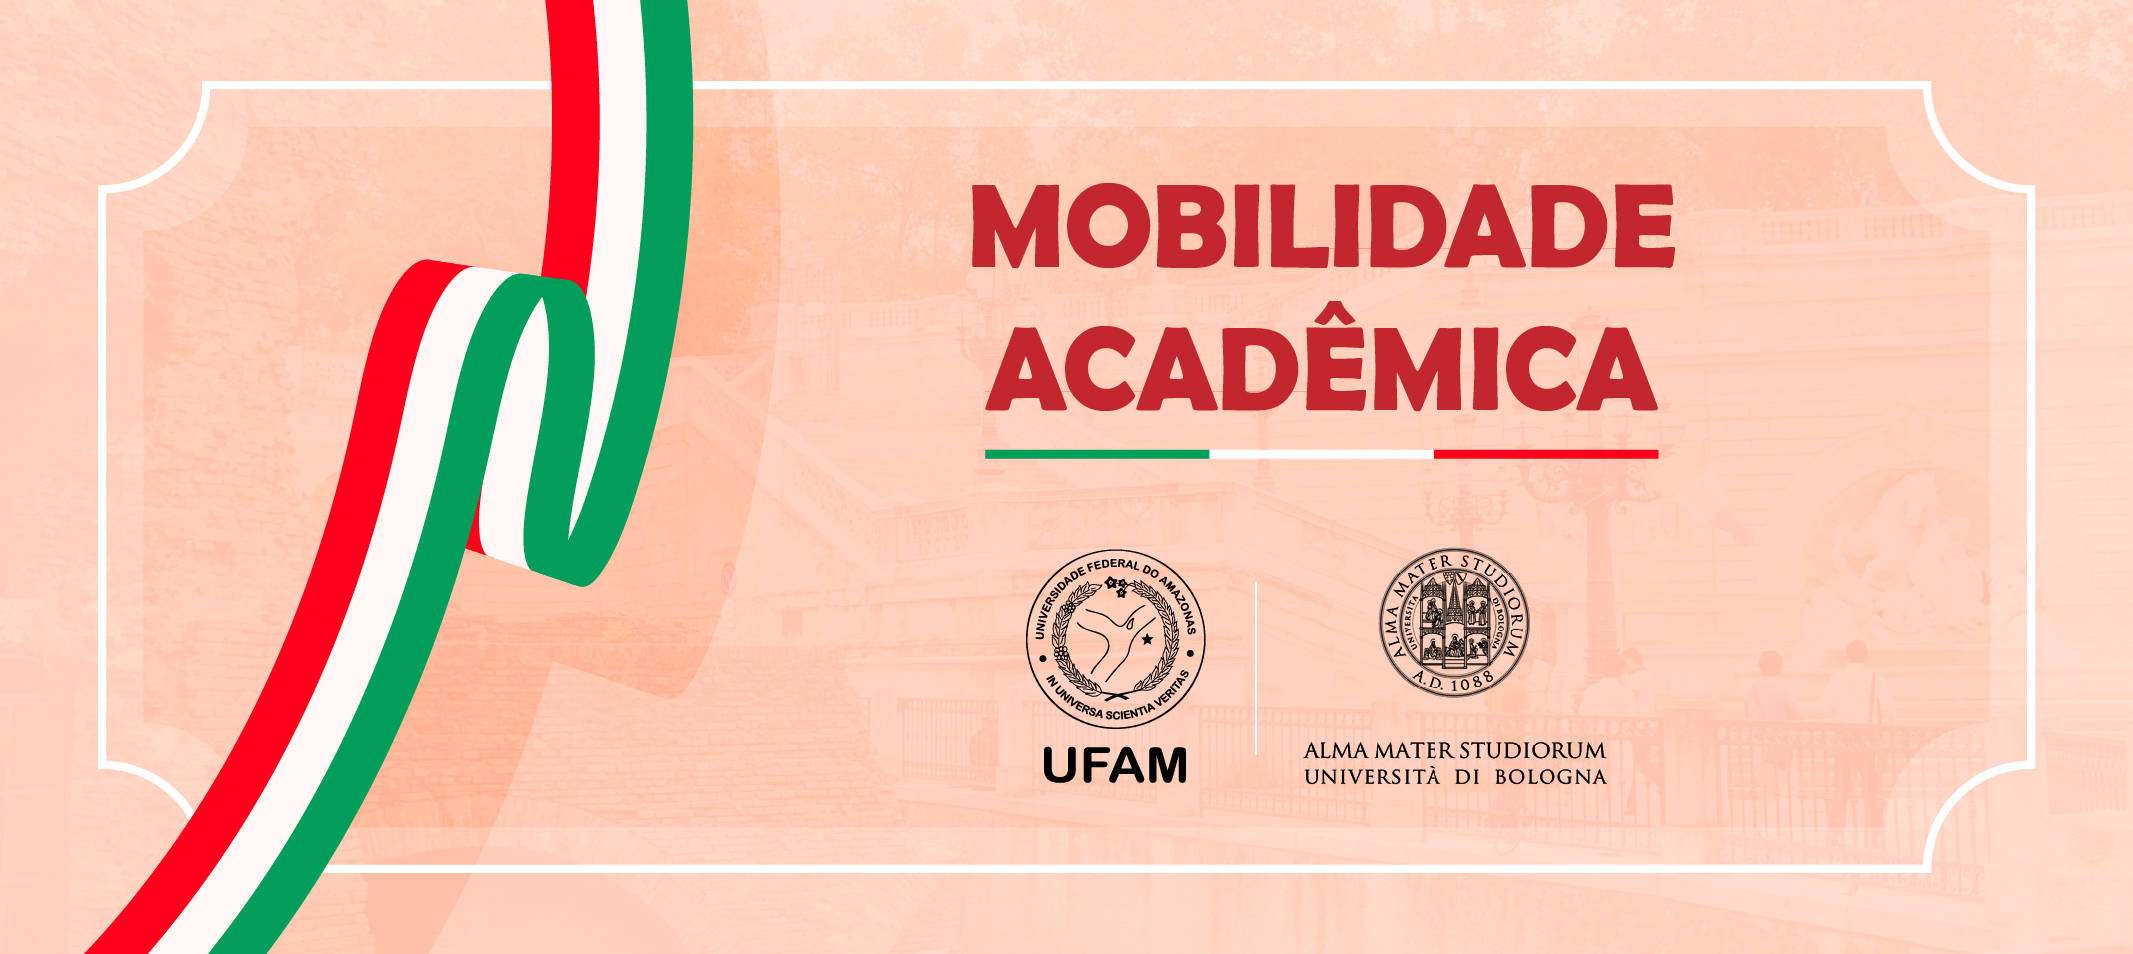 Ufam inicia tratativas com Universidade de Bolonha e incentiva a mobilidade acadêmica